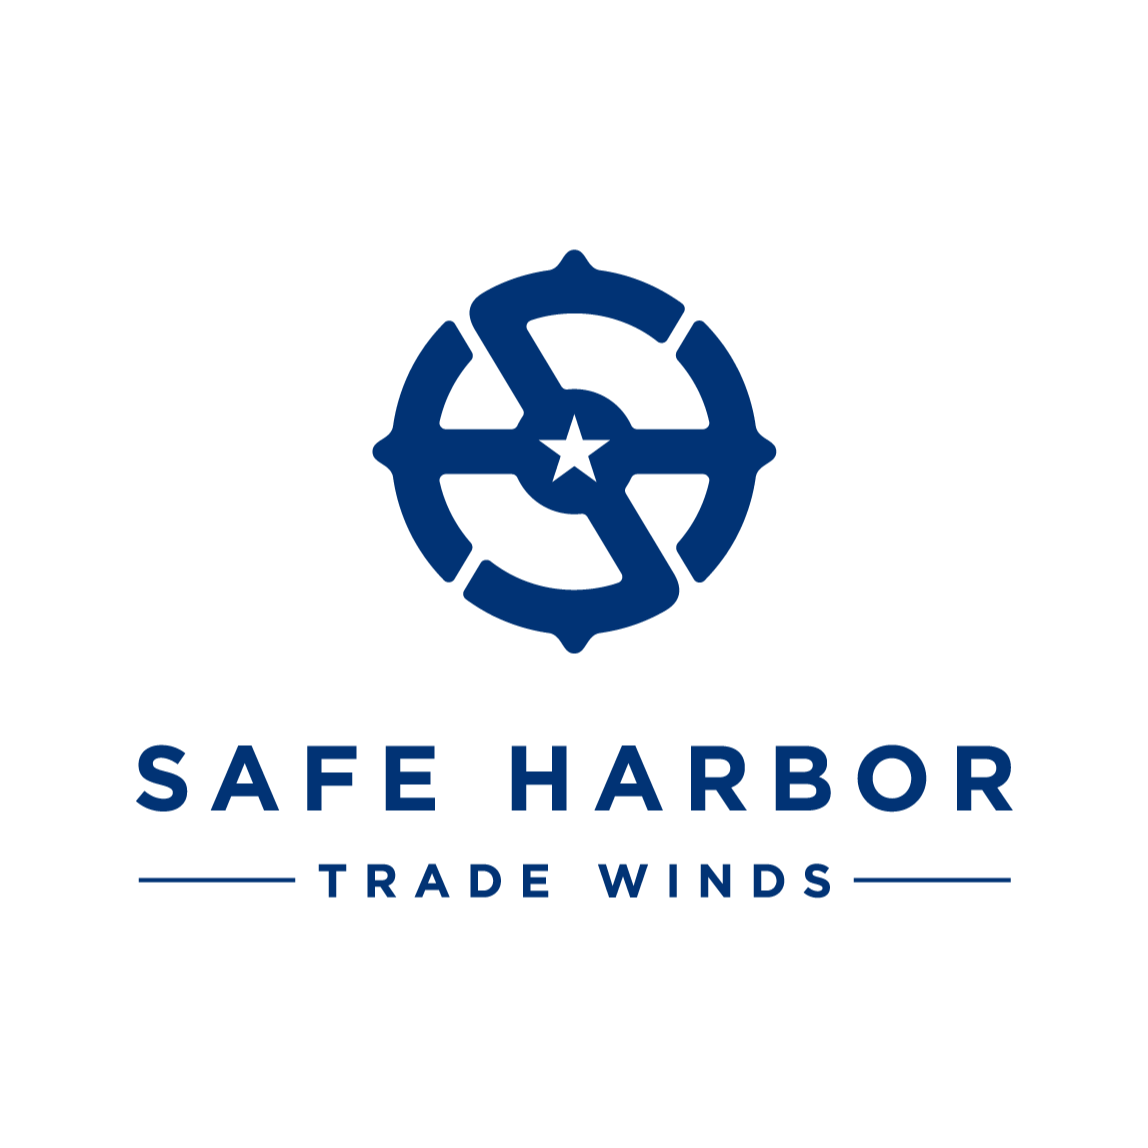 Safe Harbor Trade Winds